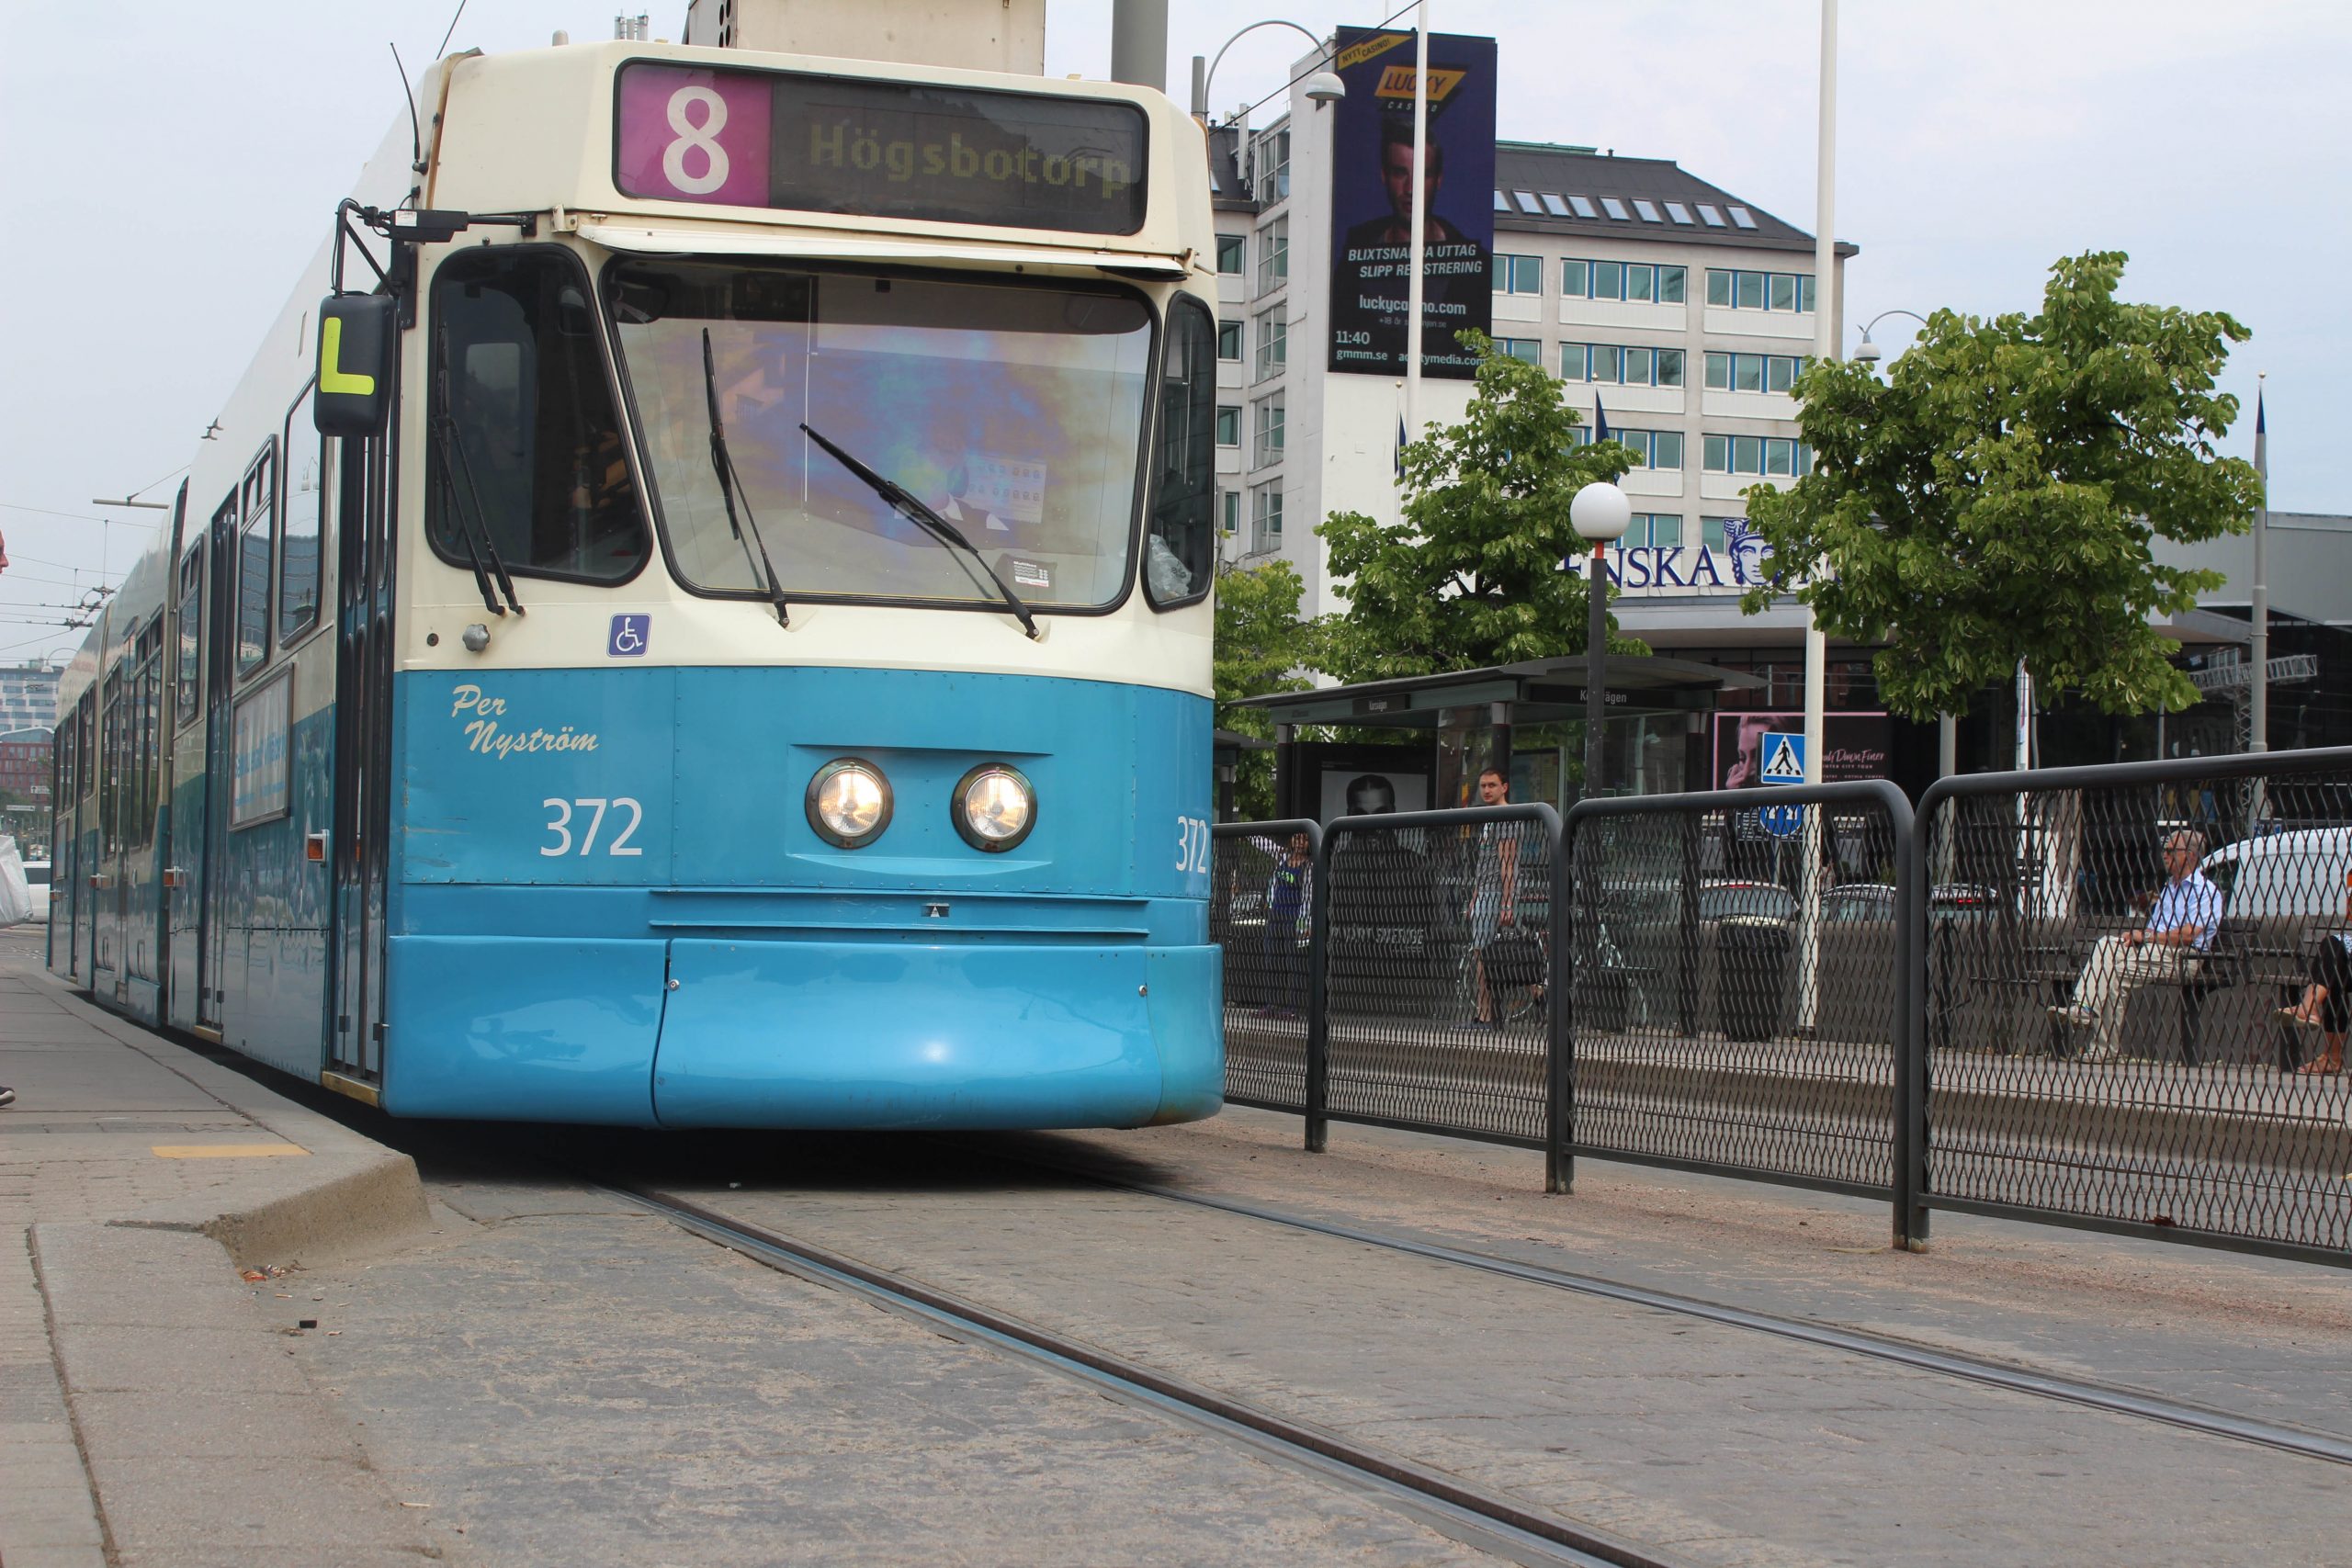 Mellan den 14 och 19 april går det inga spårvagnar mellan Axel Dahlströms torg och Opaltorget. Berörda linjer är 1,7 och 8. Ersättningsbusar sätts in på sträckan.